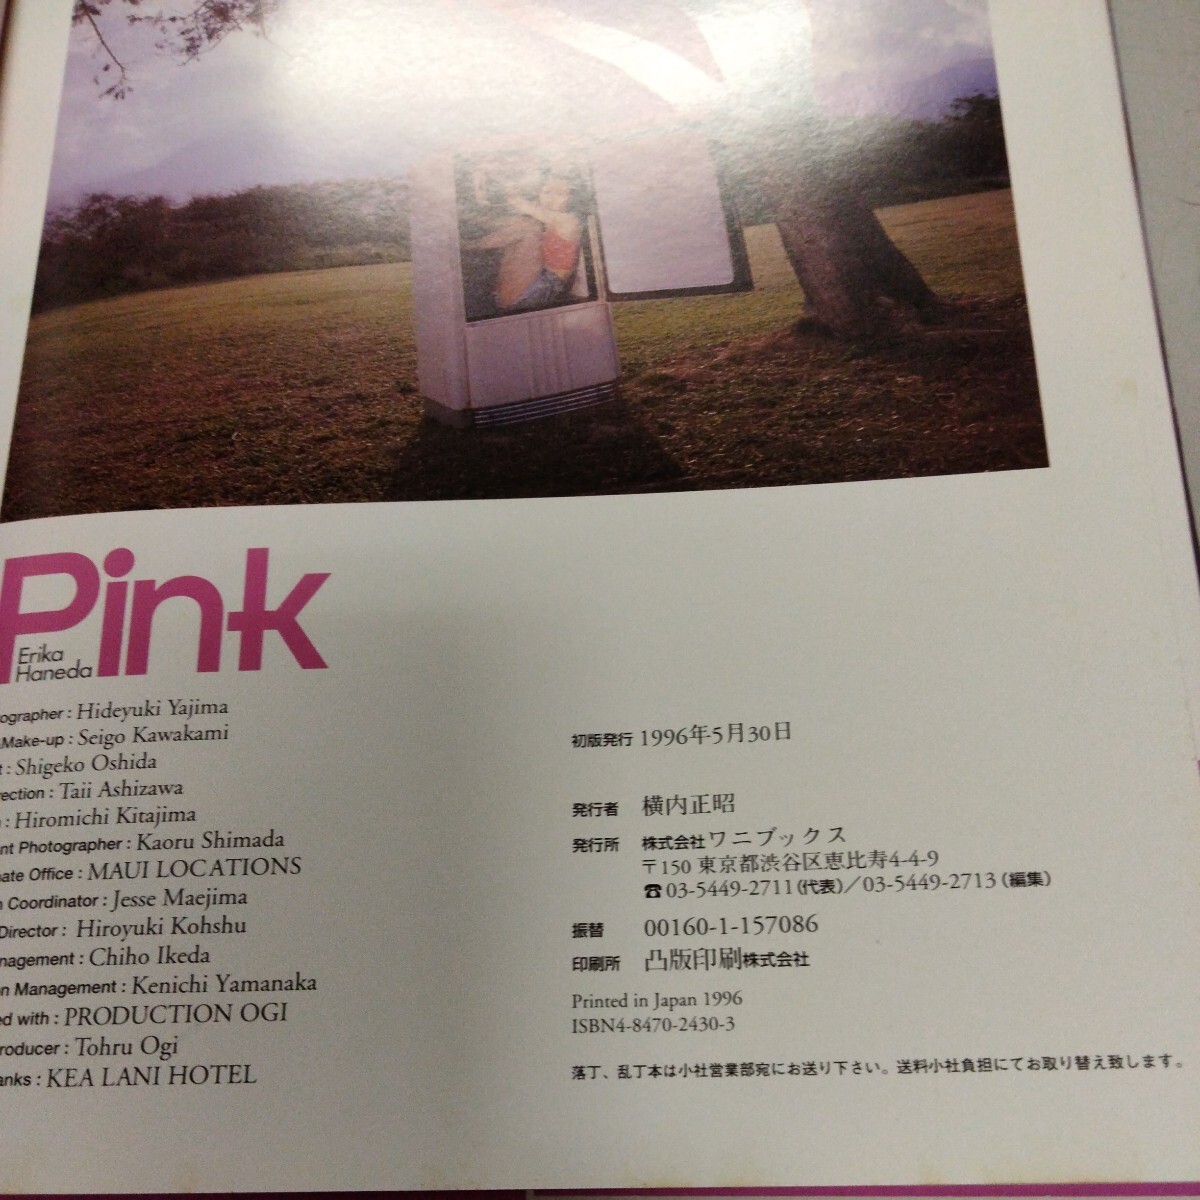 羽田惠理香 写真集 「Pink」 帯付き初版 ワニブックス_画像3